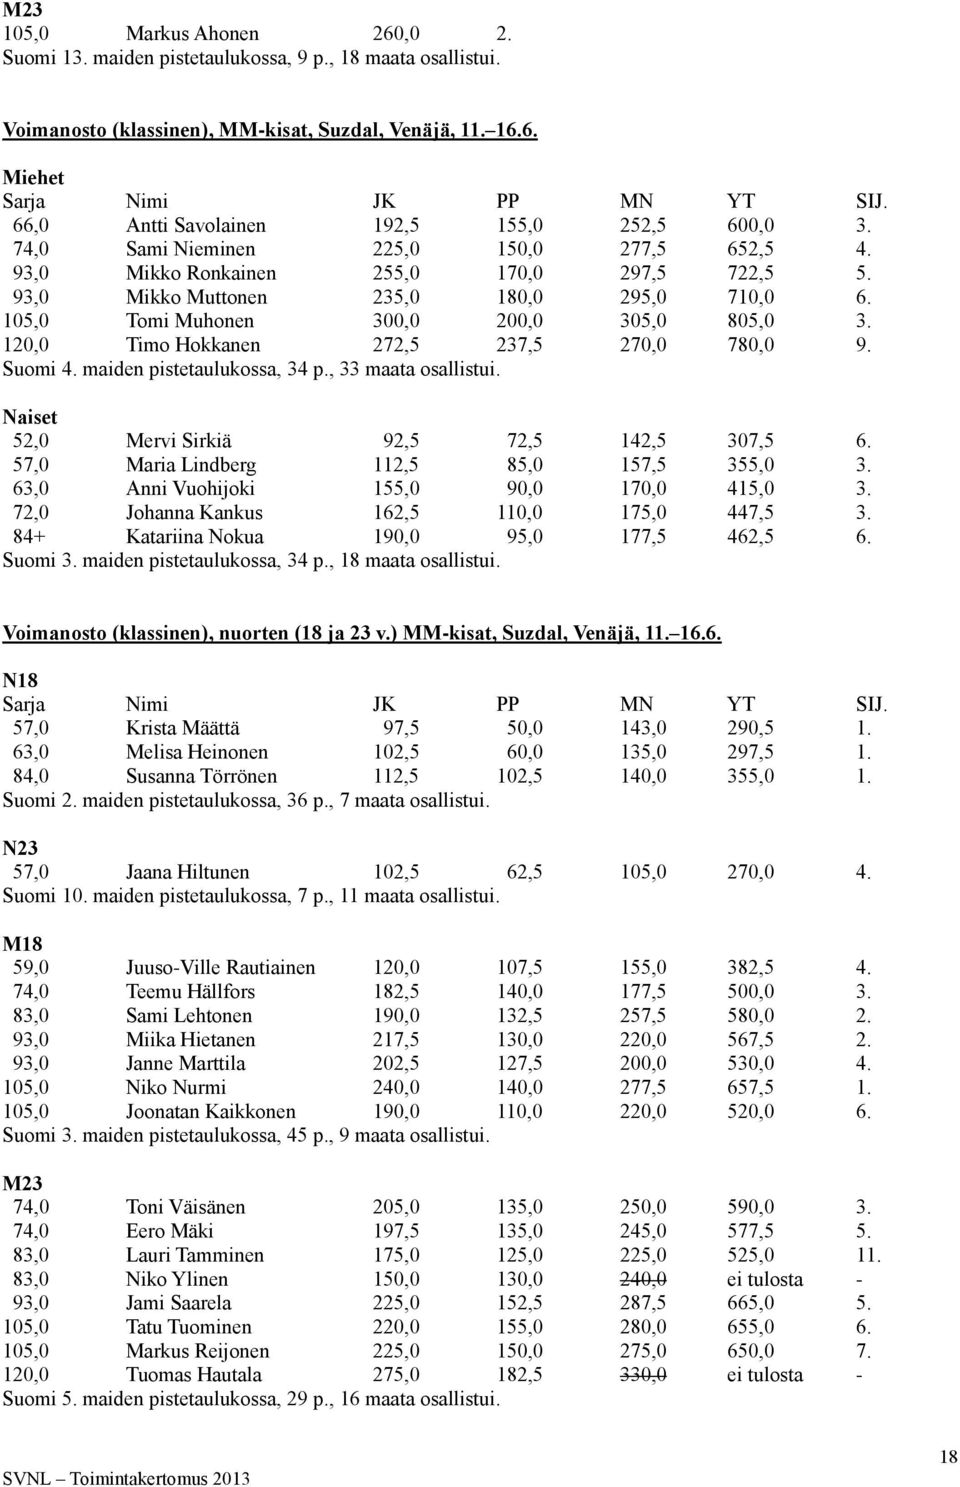 105,0 Tomi Muhonen 300,0 200,0 305,0 805,0 3. 120,0 Timo Hokkanen 272,5 237,5 270,0 780,0 9. Suomi 4. maiden pistetaulukossa, 34 p., 33 maata osallistui.